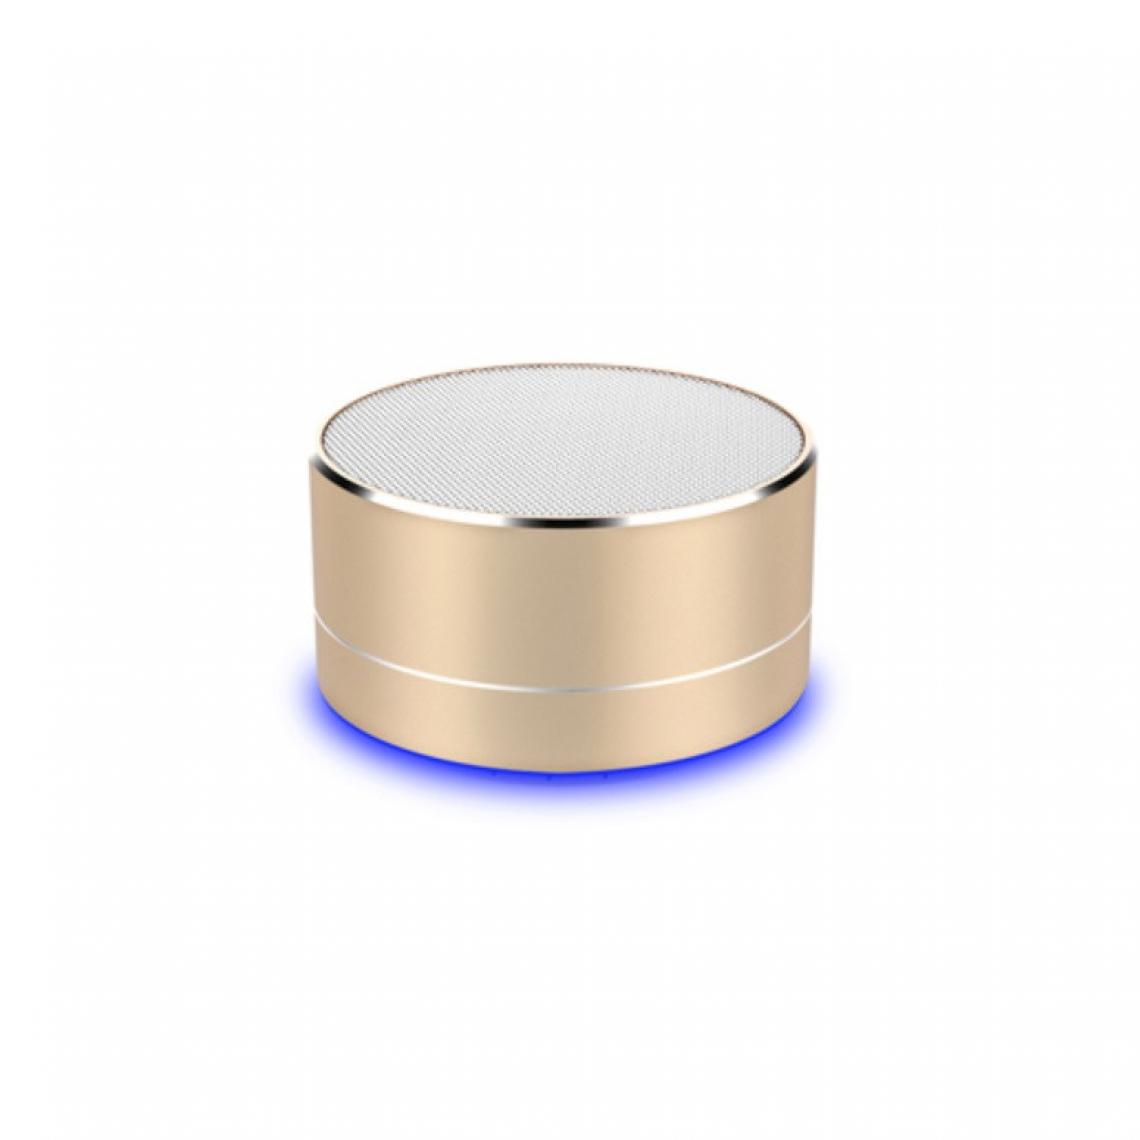 Shot - Enceinte Metal Bluetooth pour "WIKO View 5" Smartphone Port USB Carte TF Auxiliaire Haut-Parleur Micro Mini (OR) - Autres accessoires smartphone